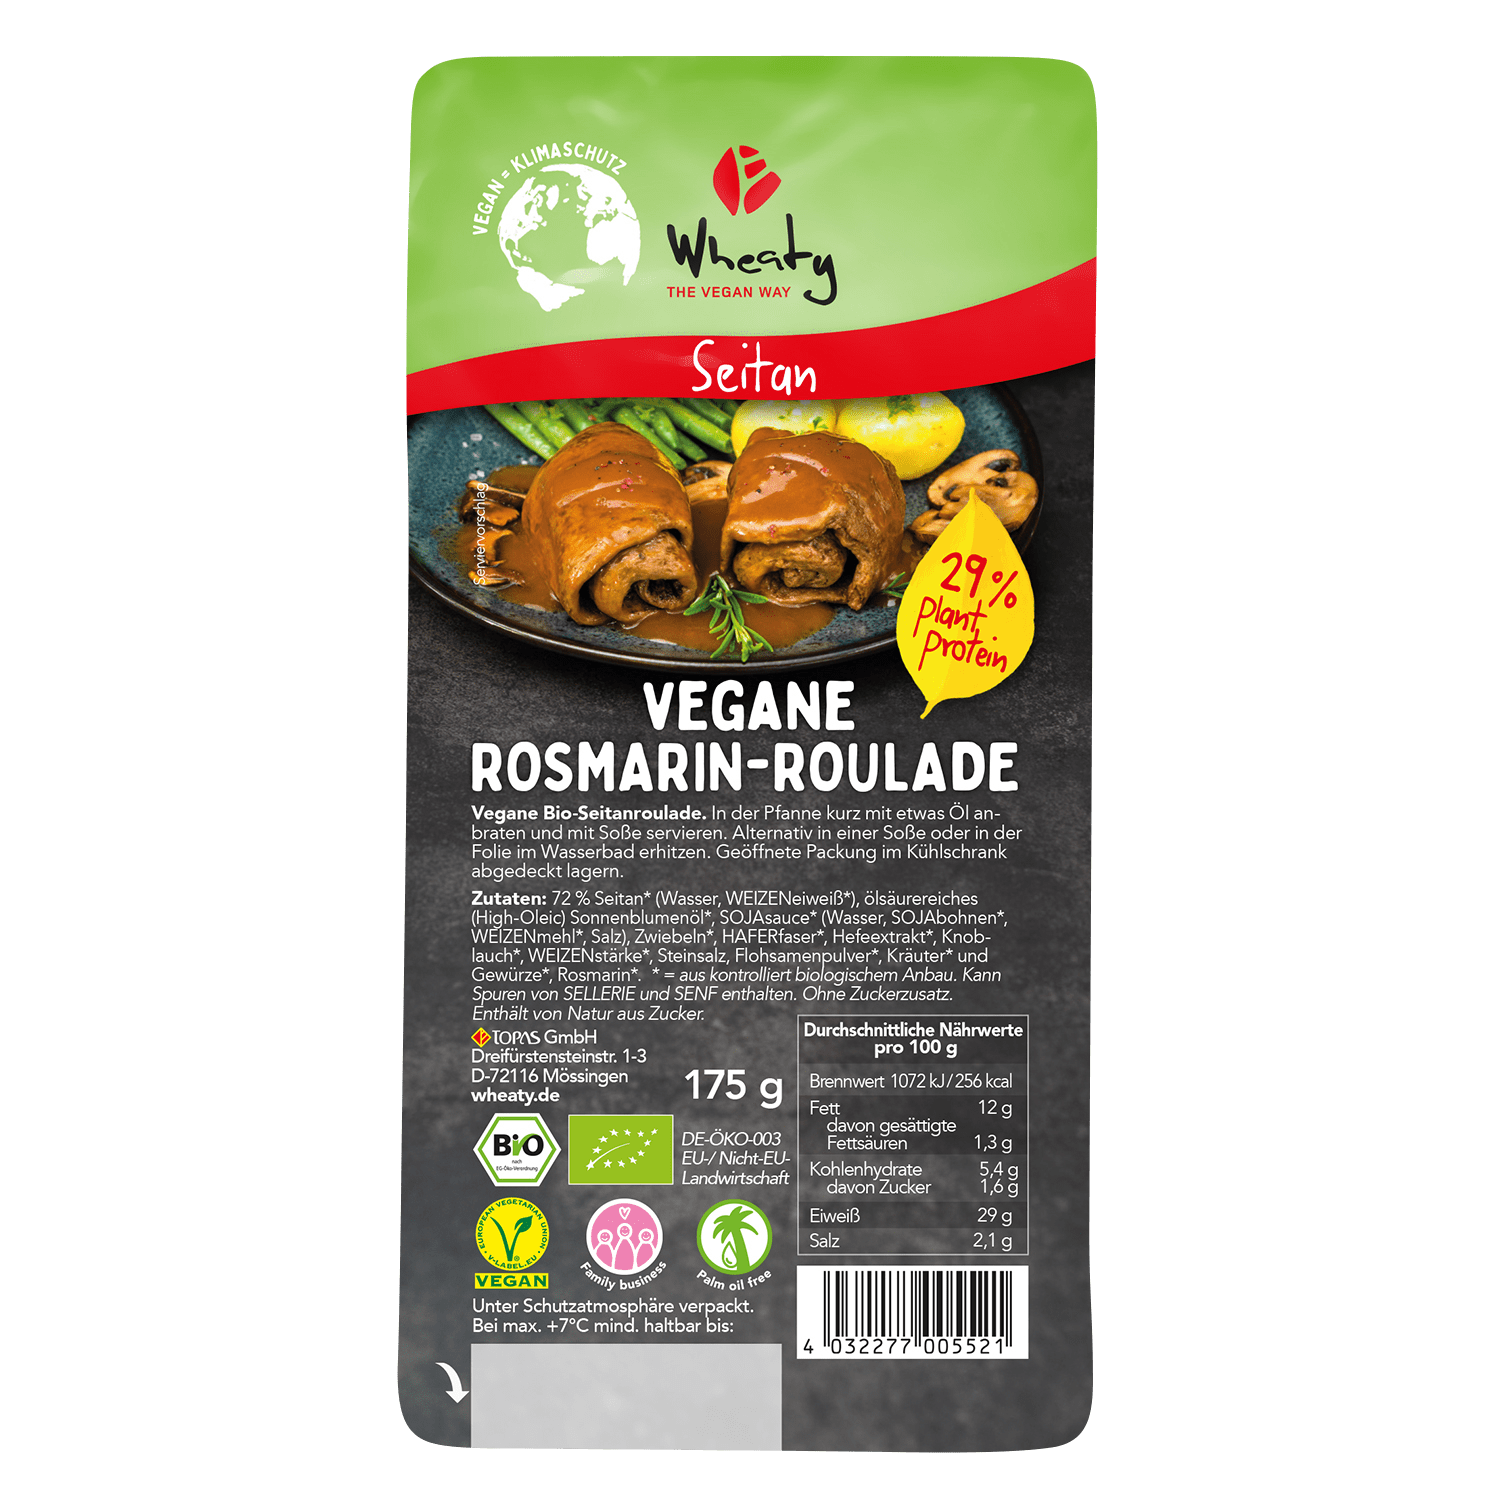 Vegan rosemary roulade, Organic, 175g